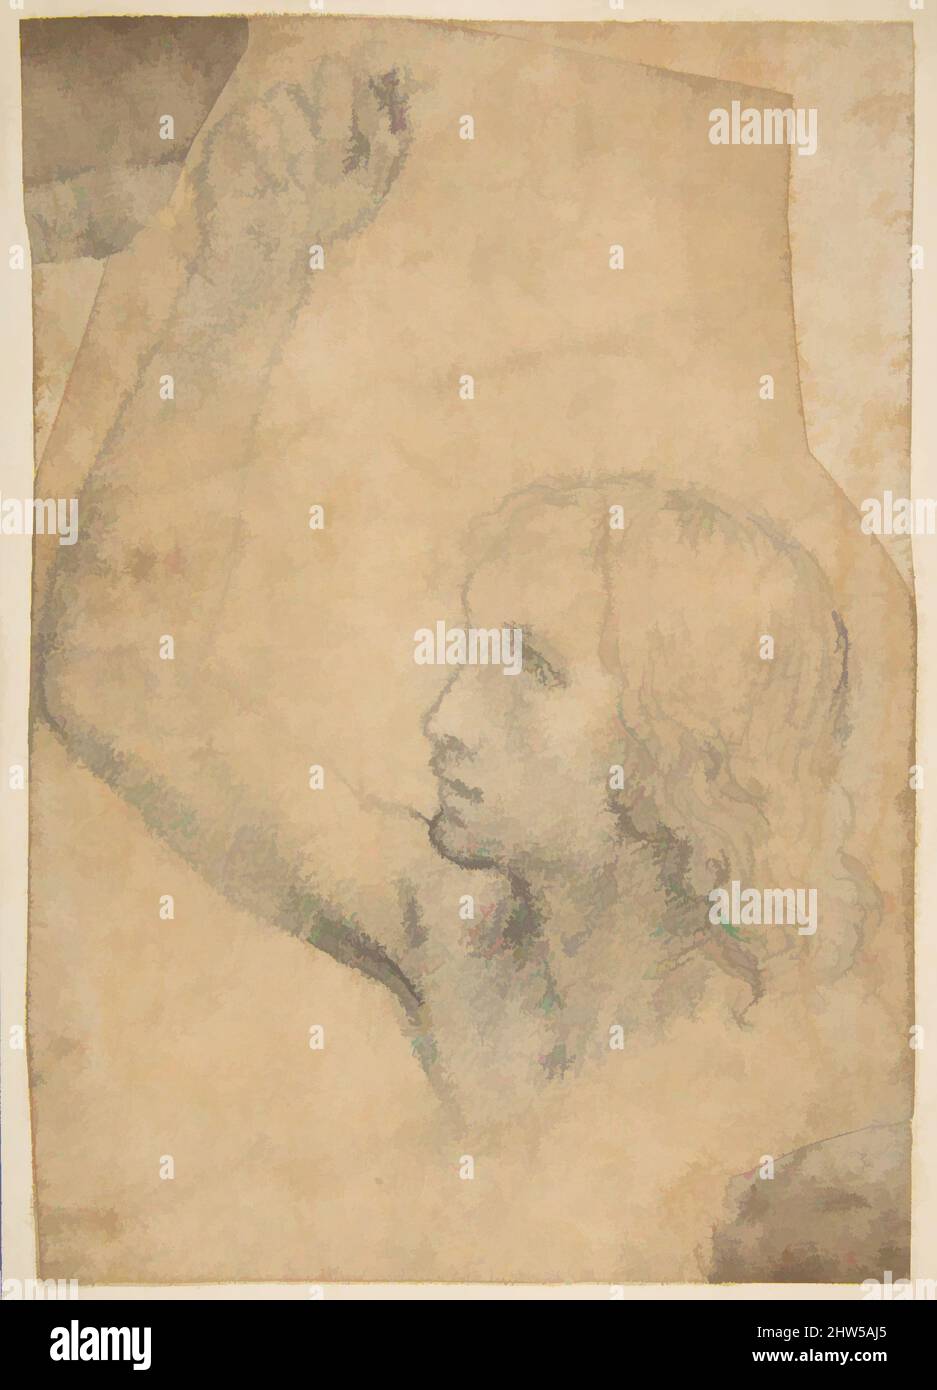 Kunst inspiriert von Jugend mit rechtem Arm in einer schulterlangen Darstellung angehoben (Vorstudie für St. Sebastian), ca. 1515, weiche schwarze Kreide oder Kohle, auf Papier jetzt sehr abgedunkelt (bis beige Farbe), 7 3/4 x 5 3/8 Zoll (19,7 x 13,7 cm), Zeichnungen, Timoteo Viti (italienisch, Urbino 1469–1523, Klassische Werke, die von Artotop mit einem Schuss Moderne modernisiert wurden. Formen, Farbe und Wert, auffällige visuelle Wirkung auf Kunst. Emotionen durch Freiheit von Kunstwerken auf zeitgemäße Weise. Eine zeitlose Botschaft, die eine wild kreative neue Richtung verfolgt. Künstler, die sich dem digitalen Medium zuwenden und die Artotop NFT erschaffen Stockfoto